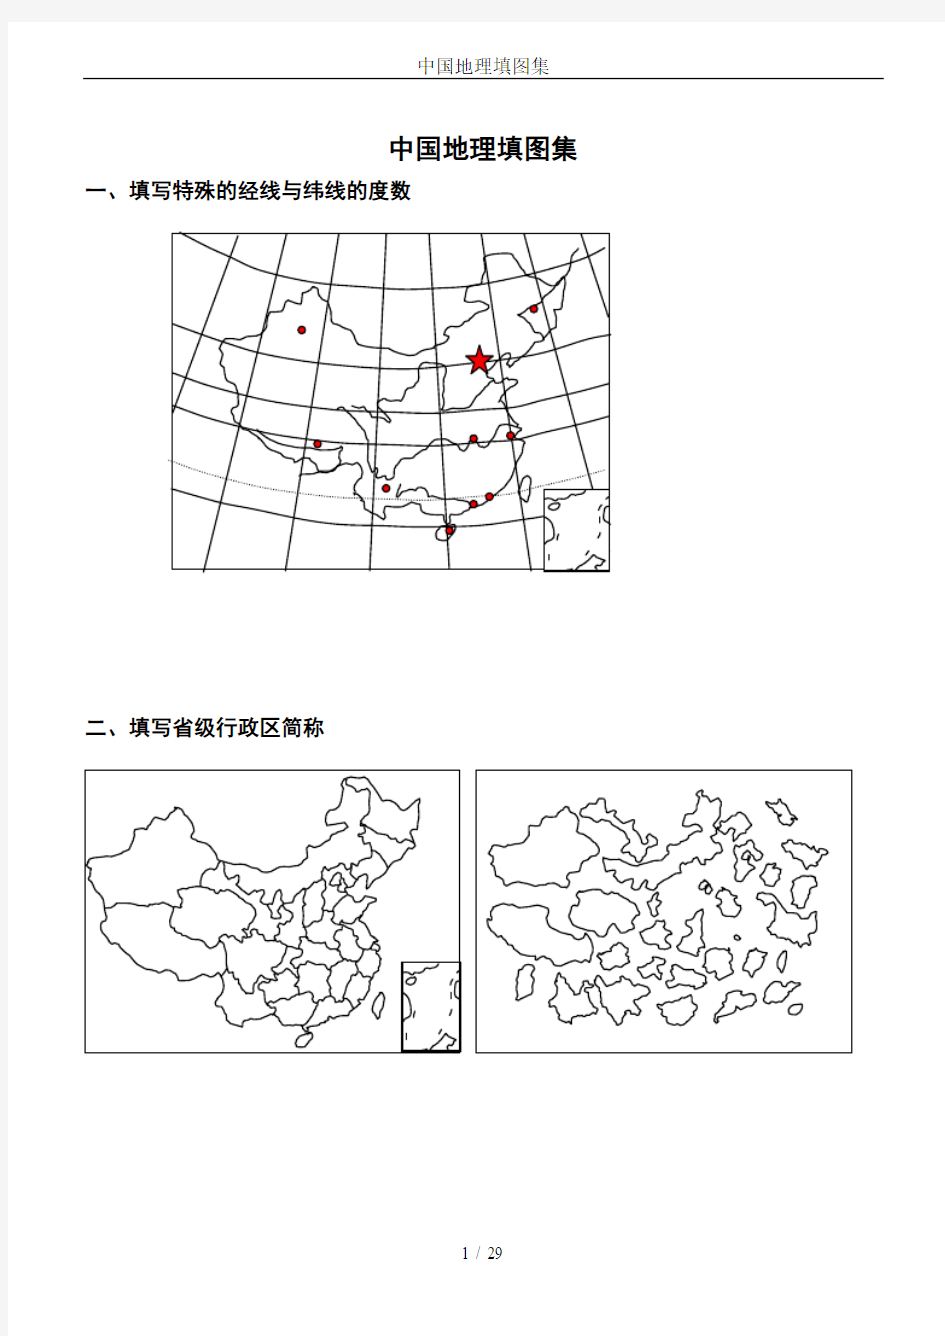 中国地理填图集